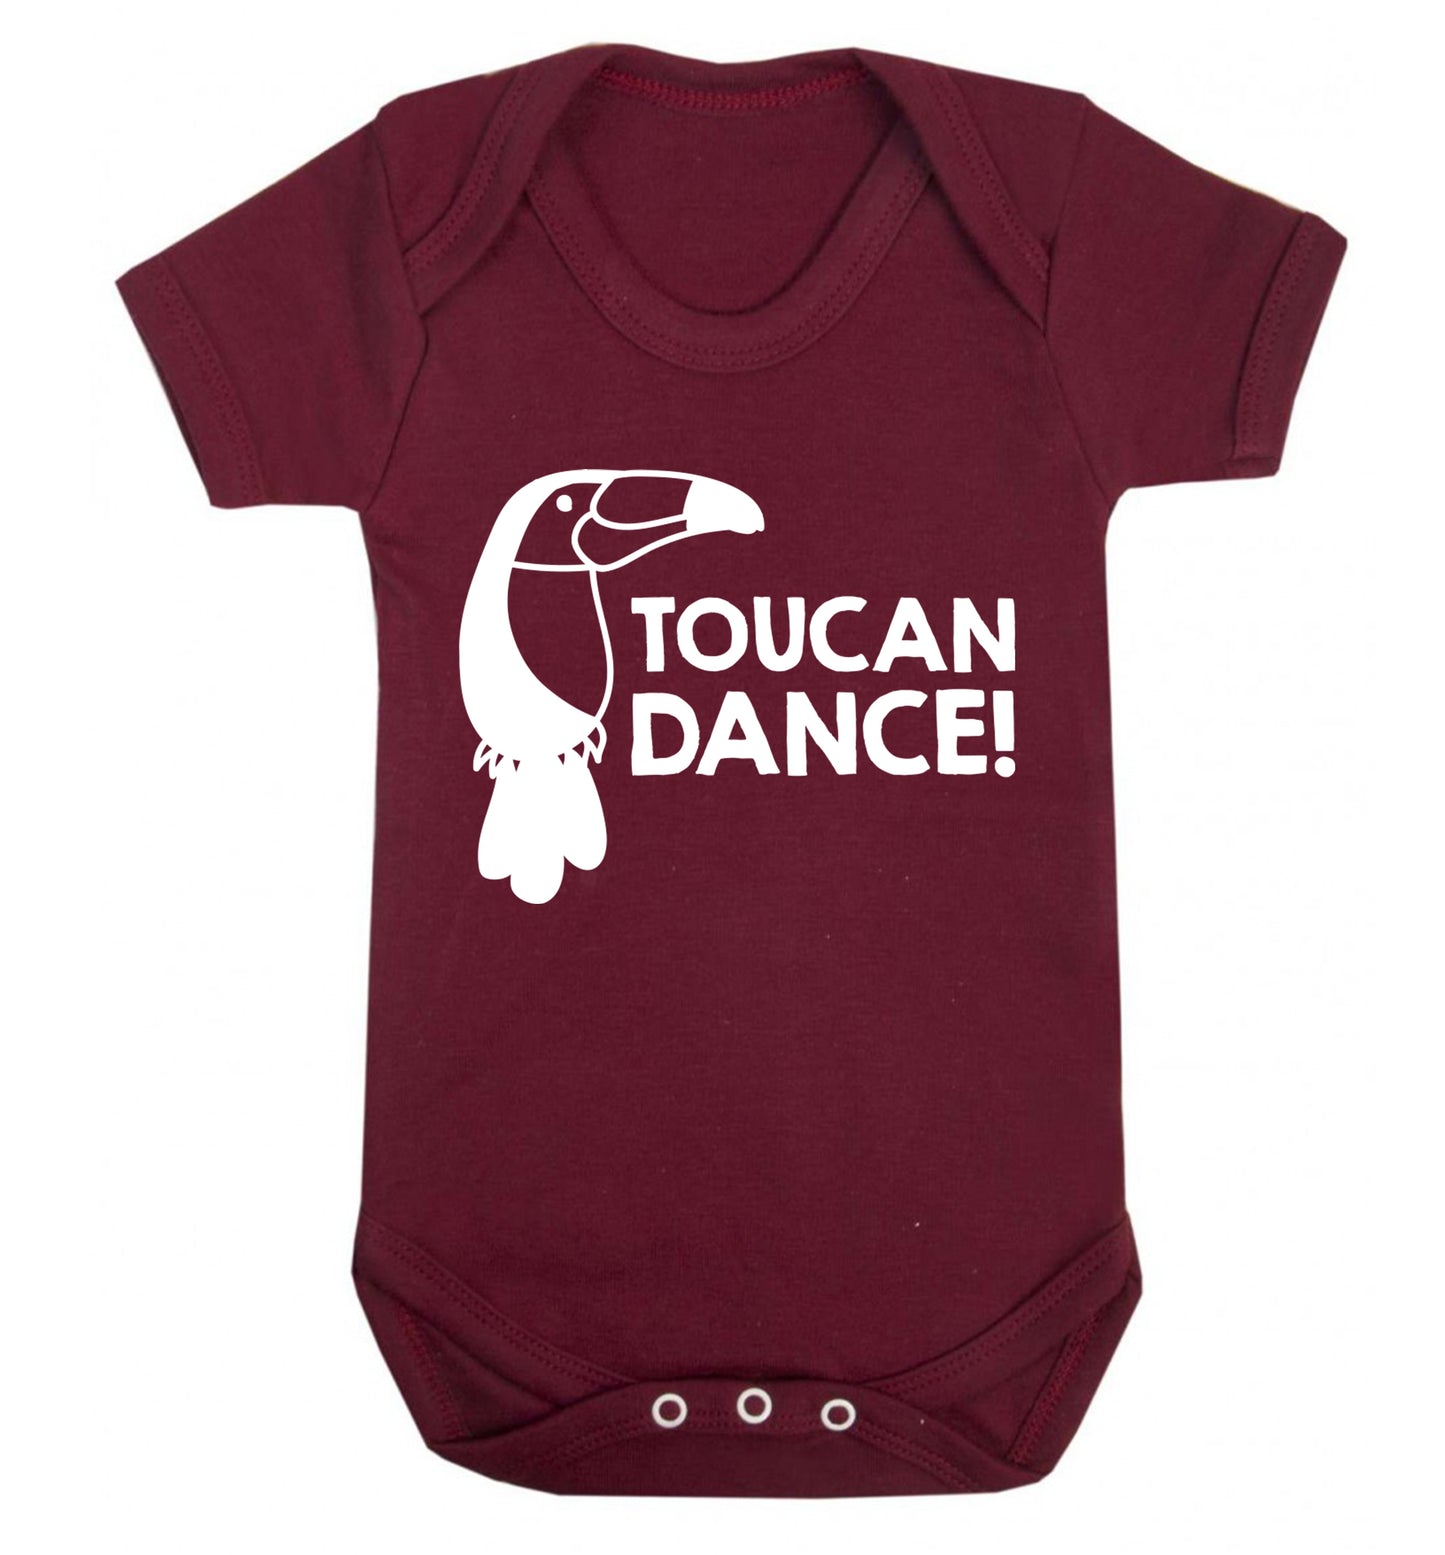 Toucan dance Baby Vest maroon 18-24 months